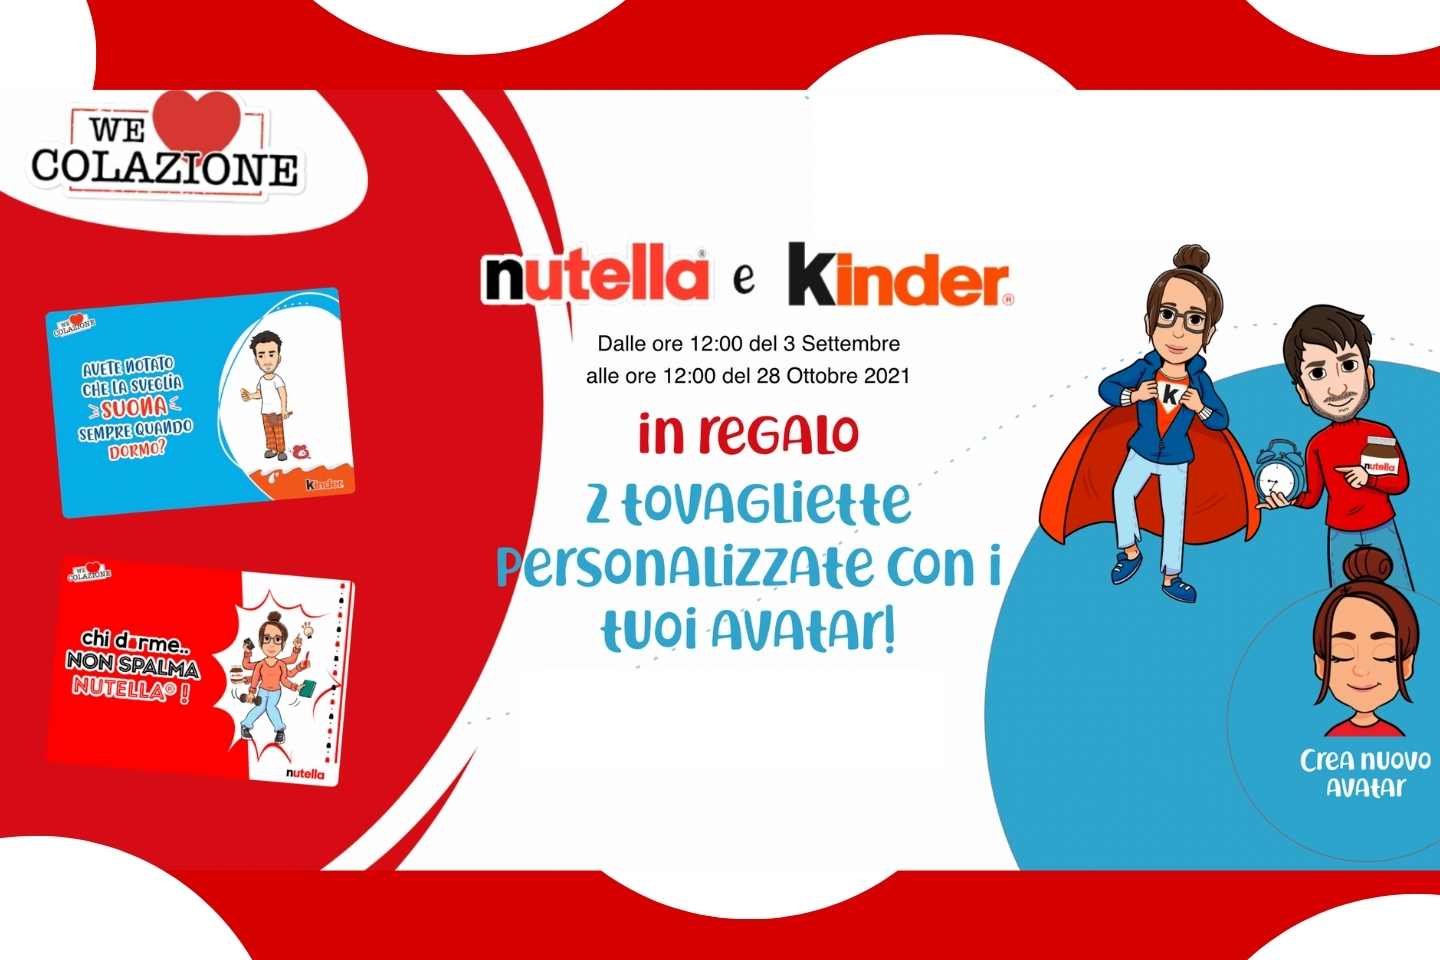 Concorso Kinder e Nutella “We Love Colazione”: Acquista anche su Amazon e vinci come premio sicuro 2 tovagliette personalizzate